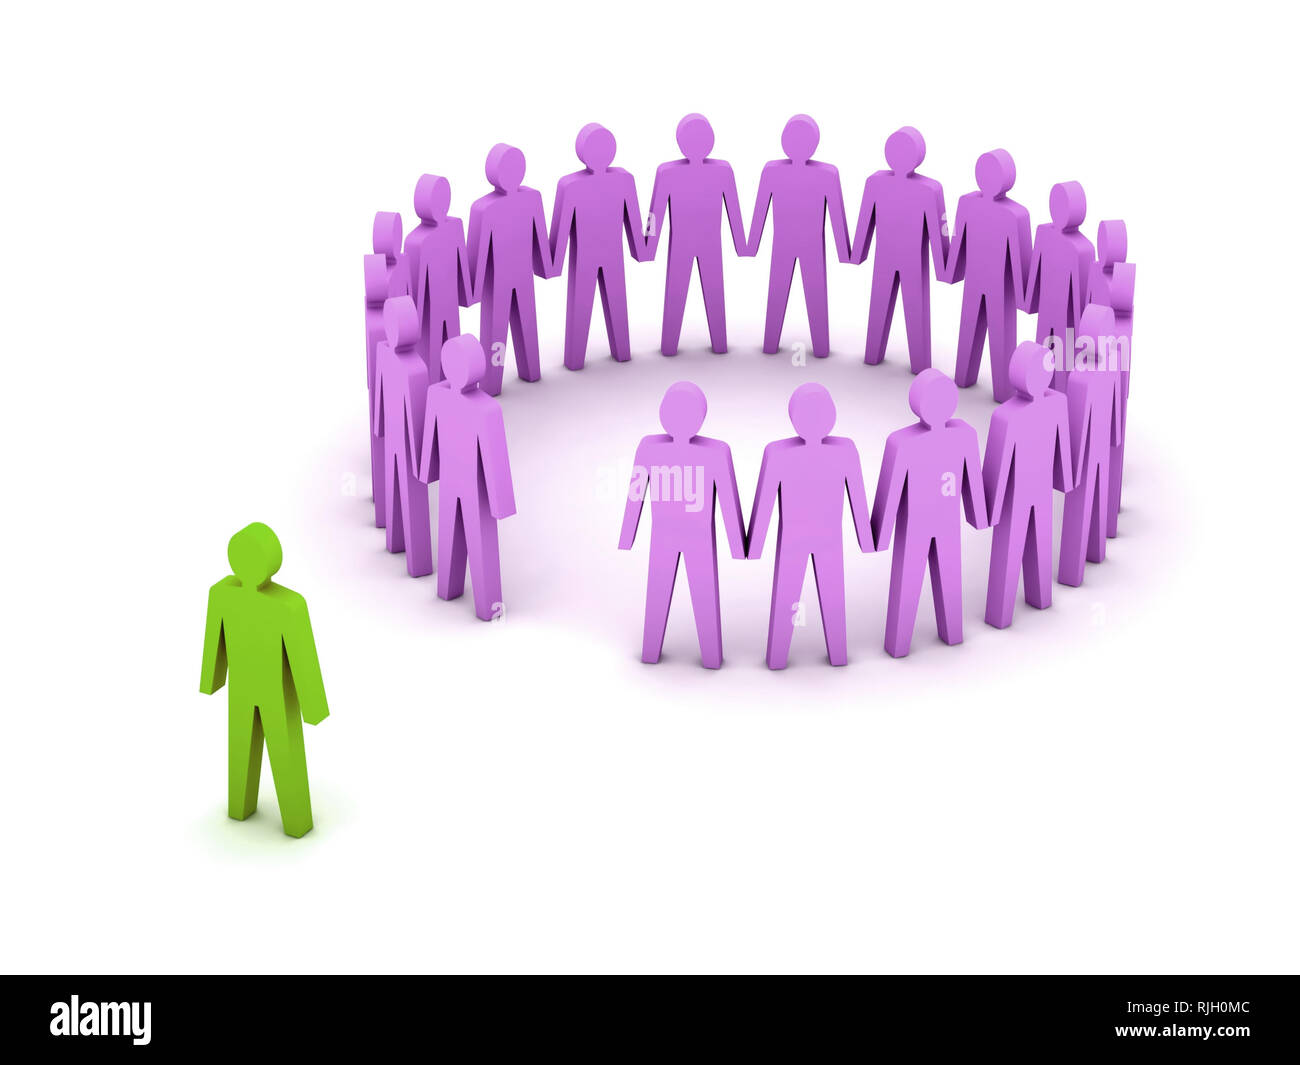 И отдельные личности и организации. Человек толпы. Один человек и группа. Отдельные группы людей. Группа людей отдельно от других.